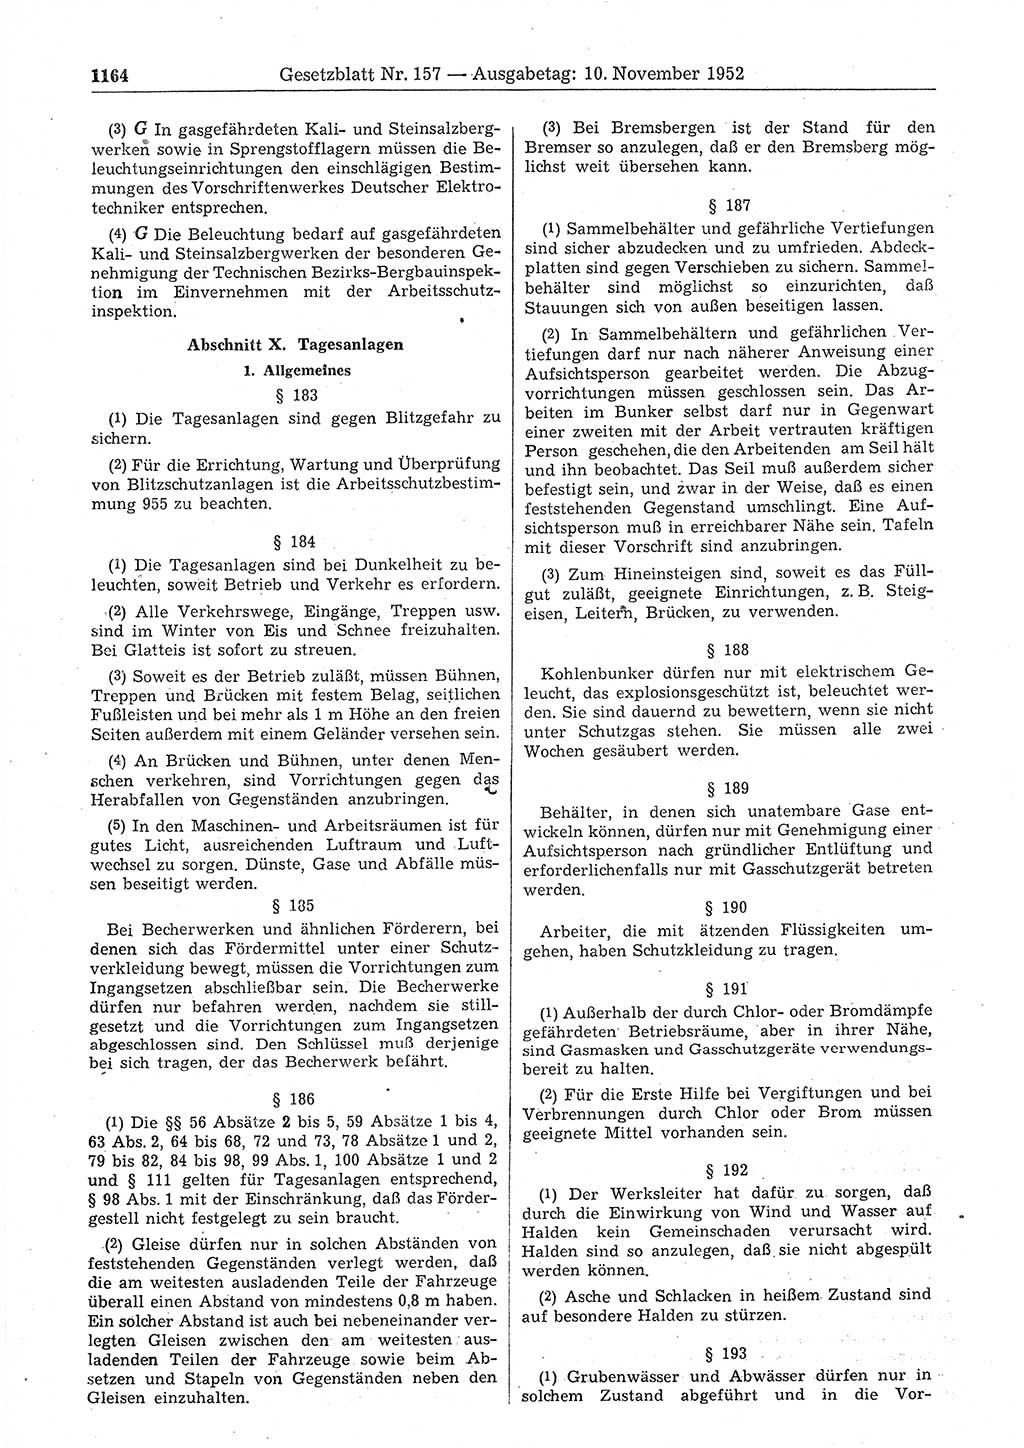 Gesetzblatt (GBl.) der Deutschen Demokratischen Republik (DDR) 1952, Seite 1164 (GBl. DDR 1952, S. 1164)